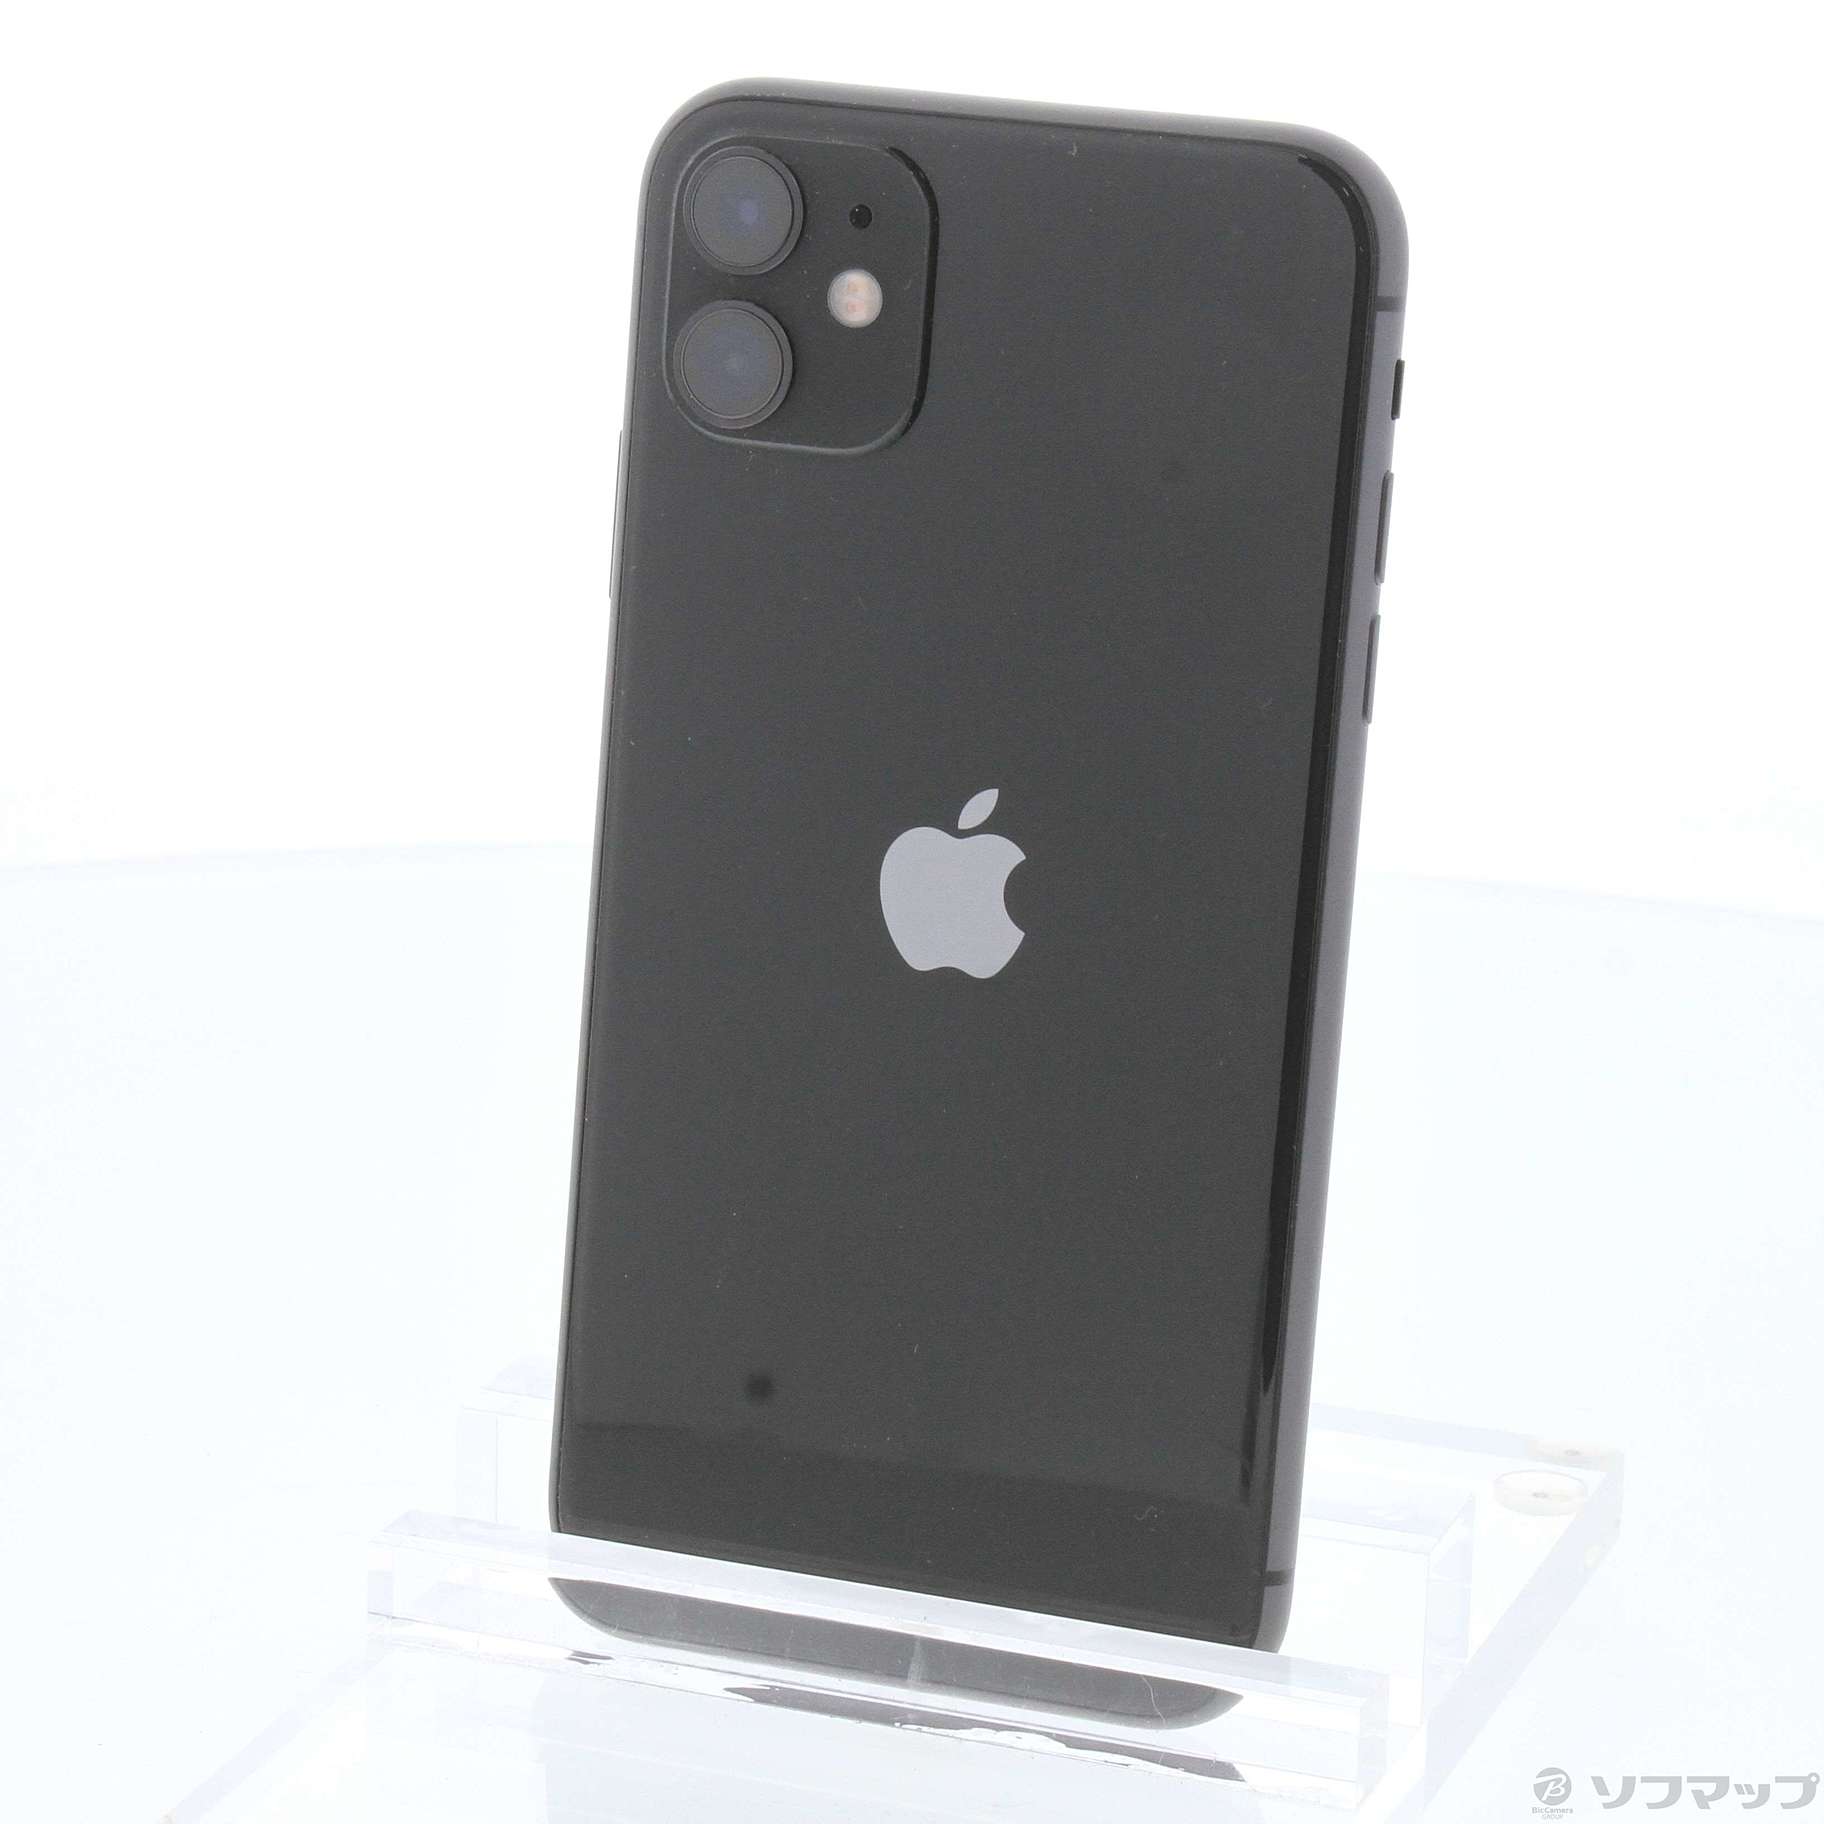 AppleiPhone 11 ブラック 64 GB SIMフリー - スマートフォン本体